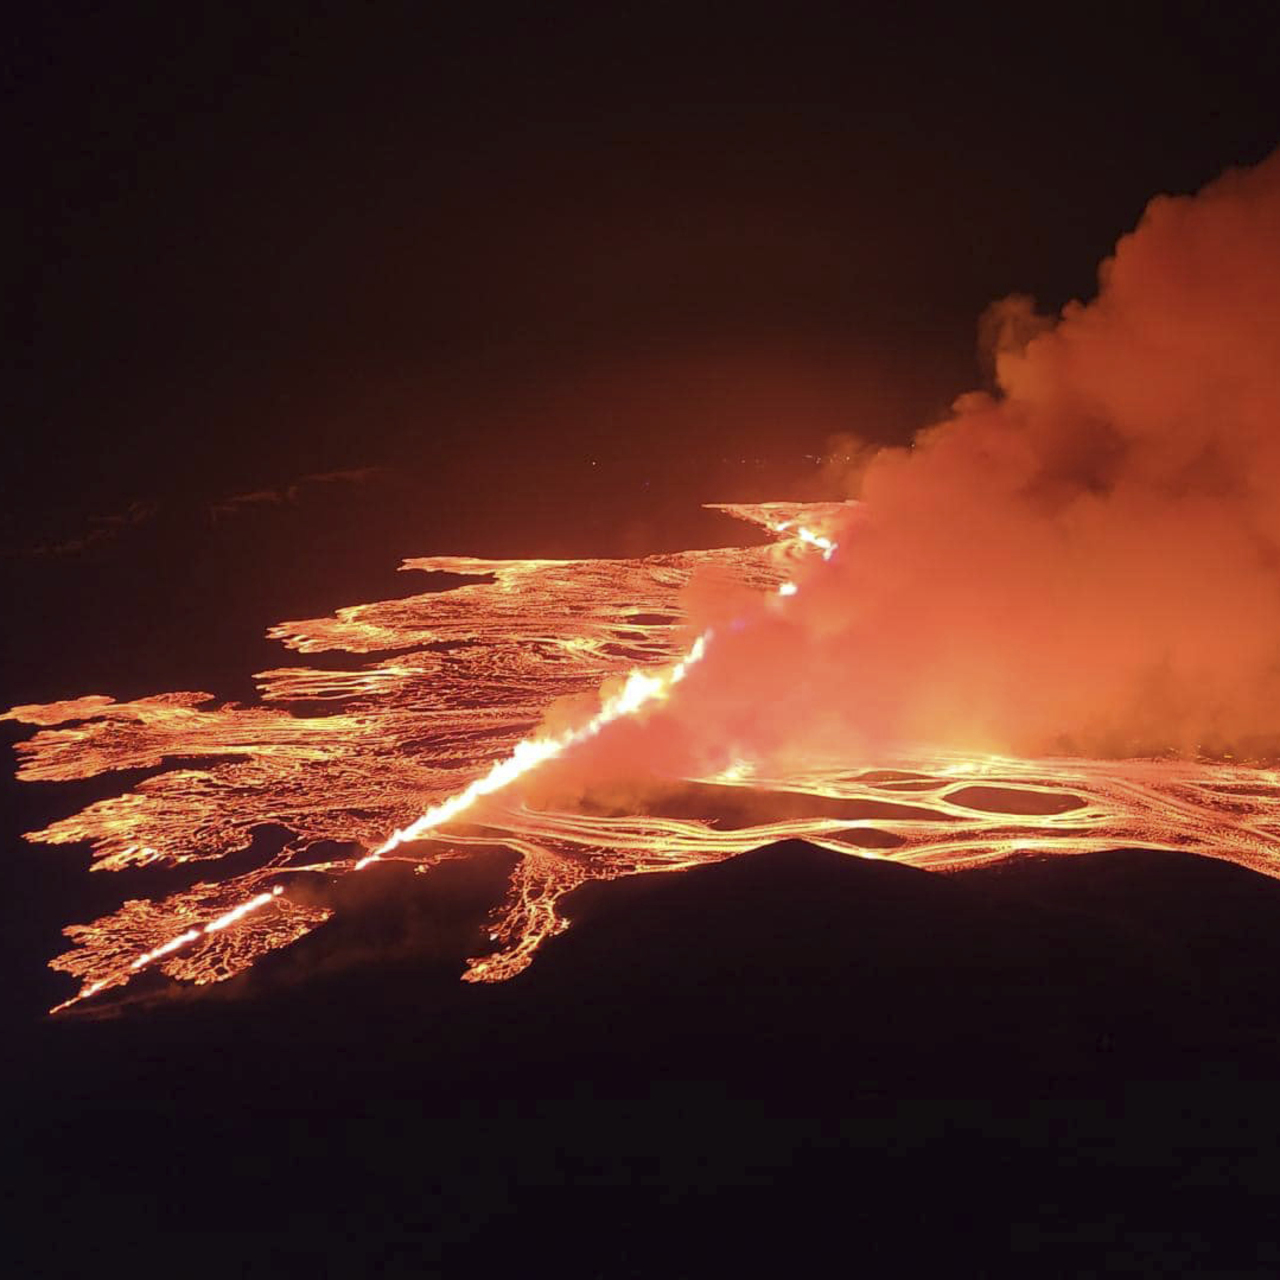 İzlanda'da son 3 ayda 4. yanardağ patlaması